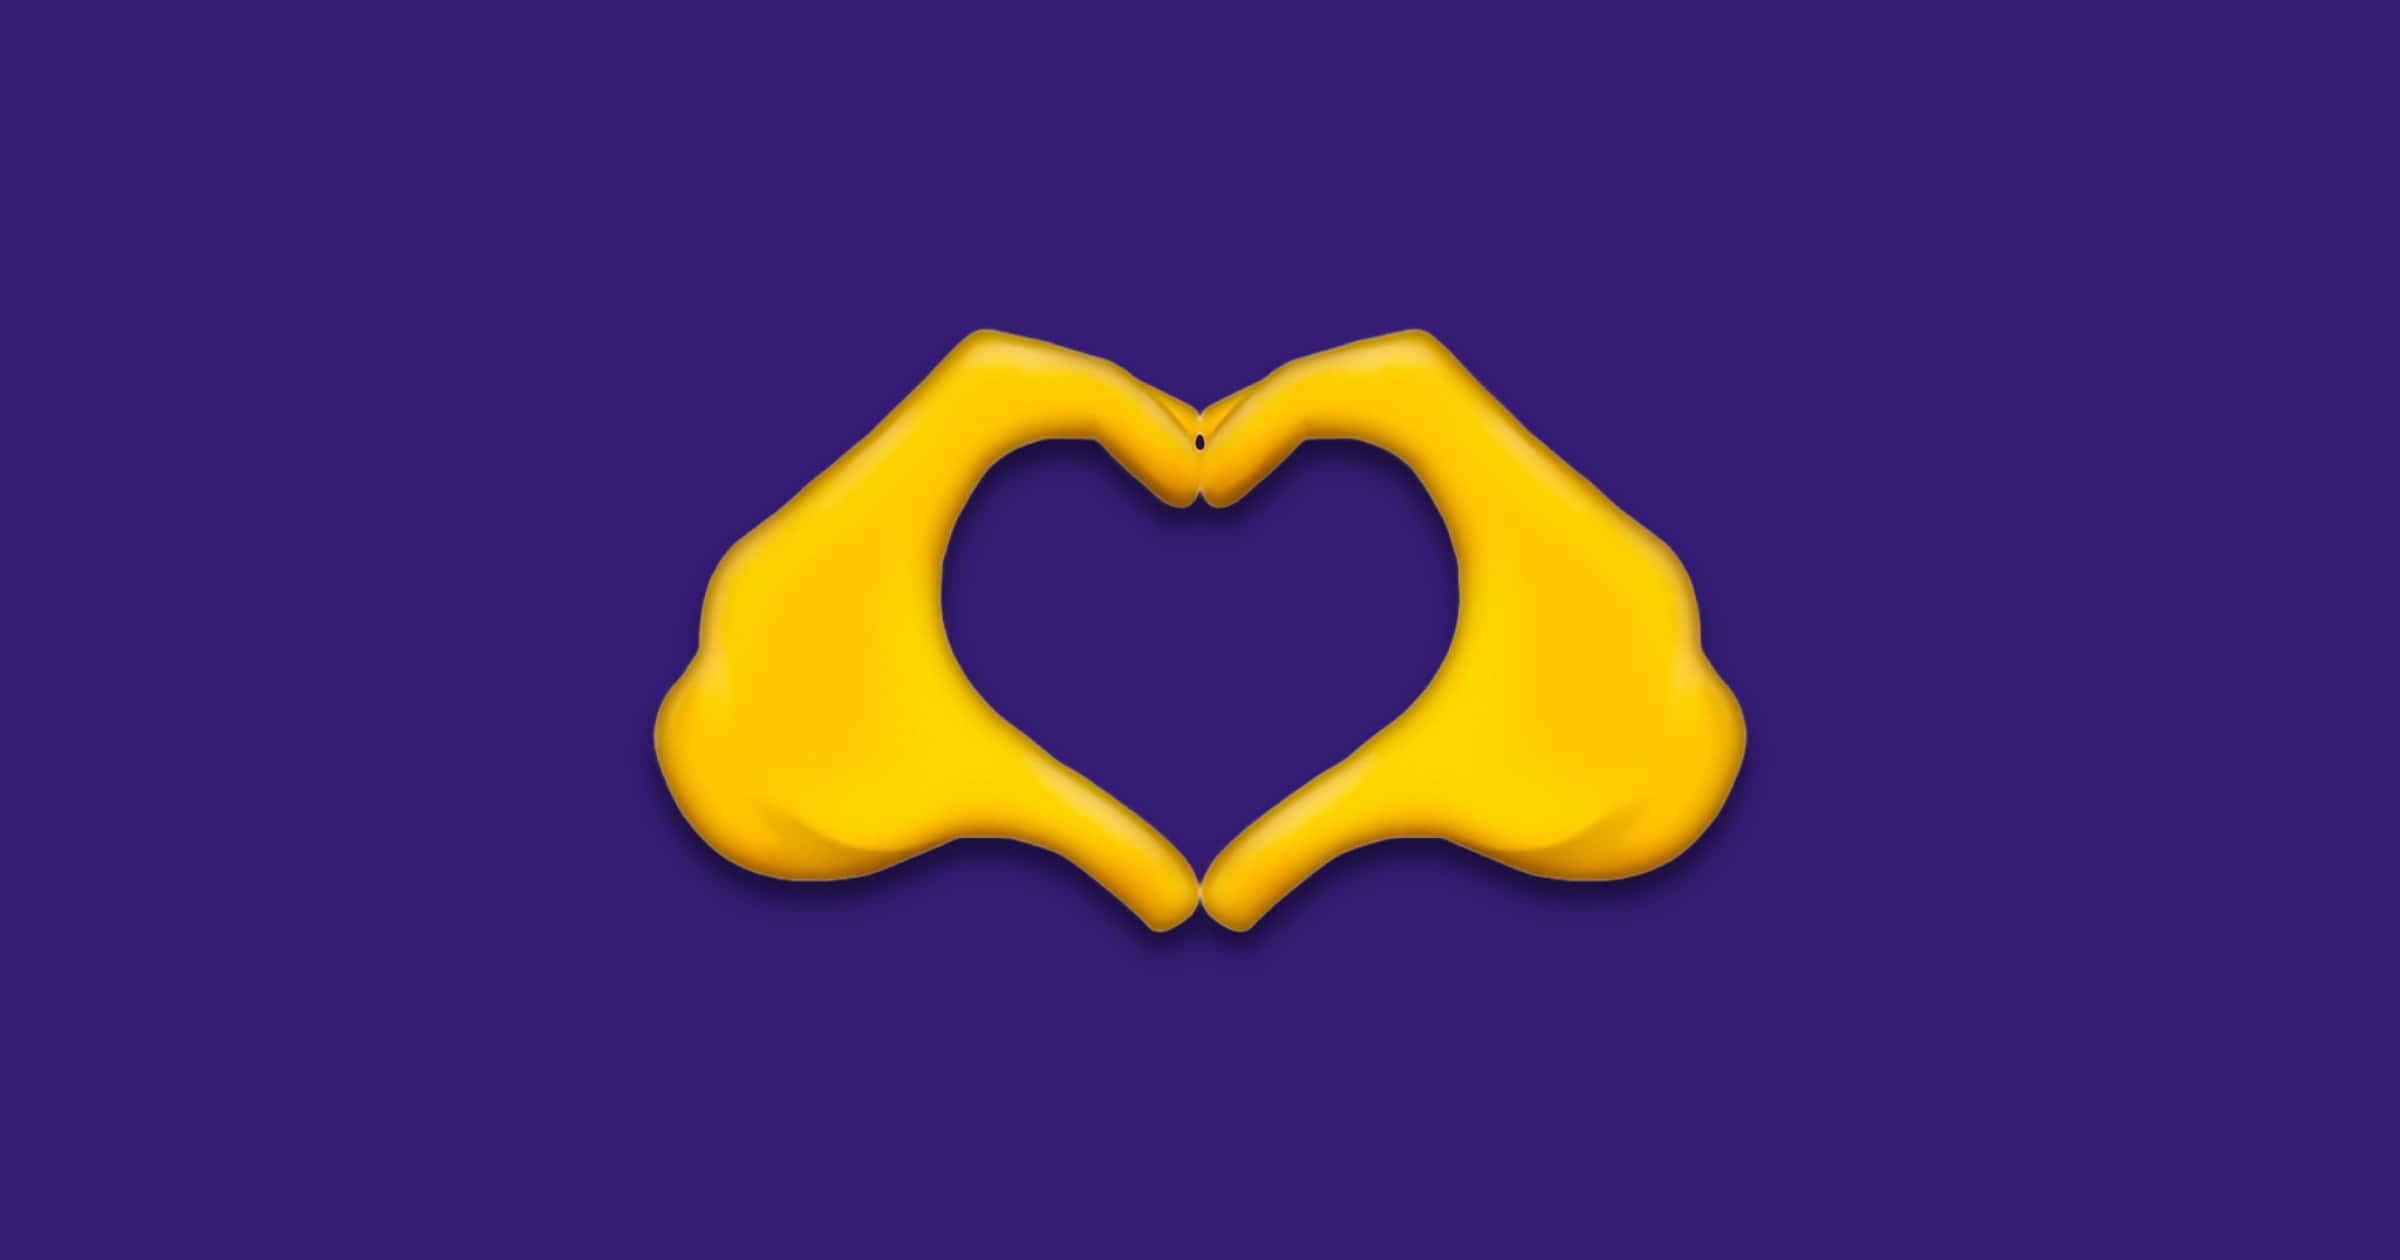 emoji 14 heart hands